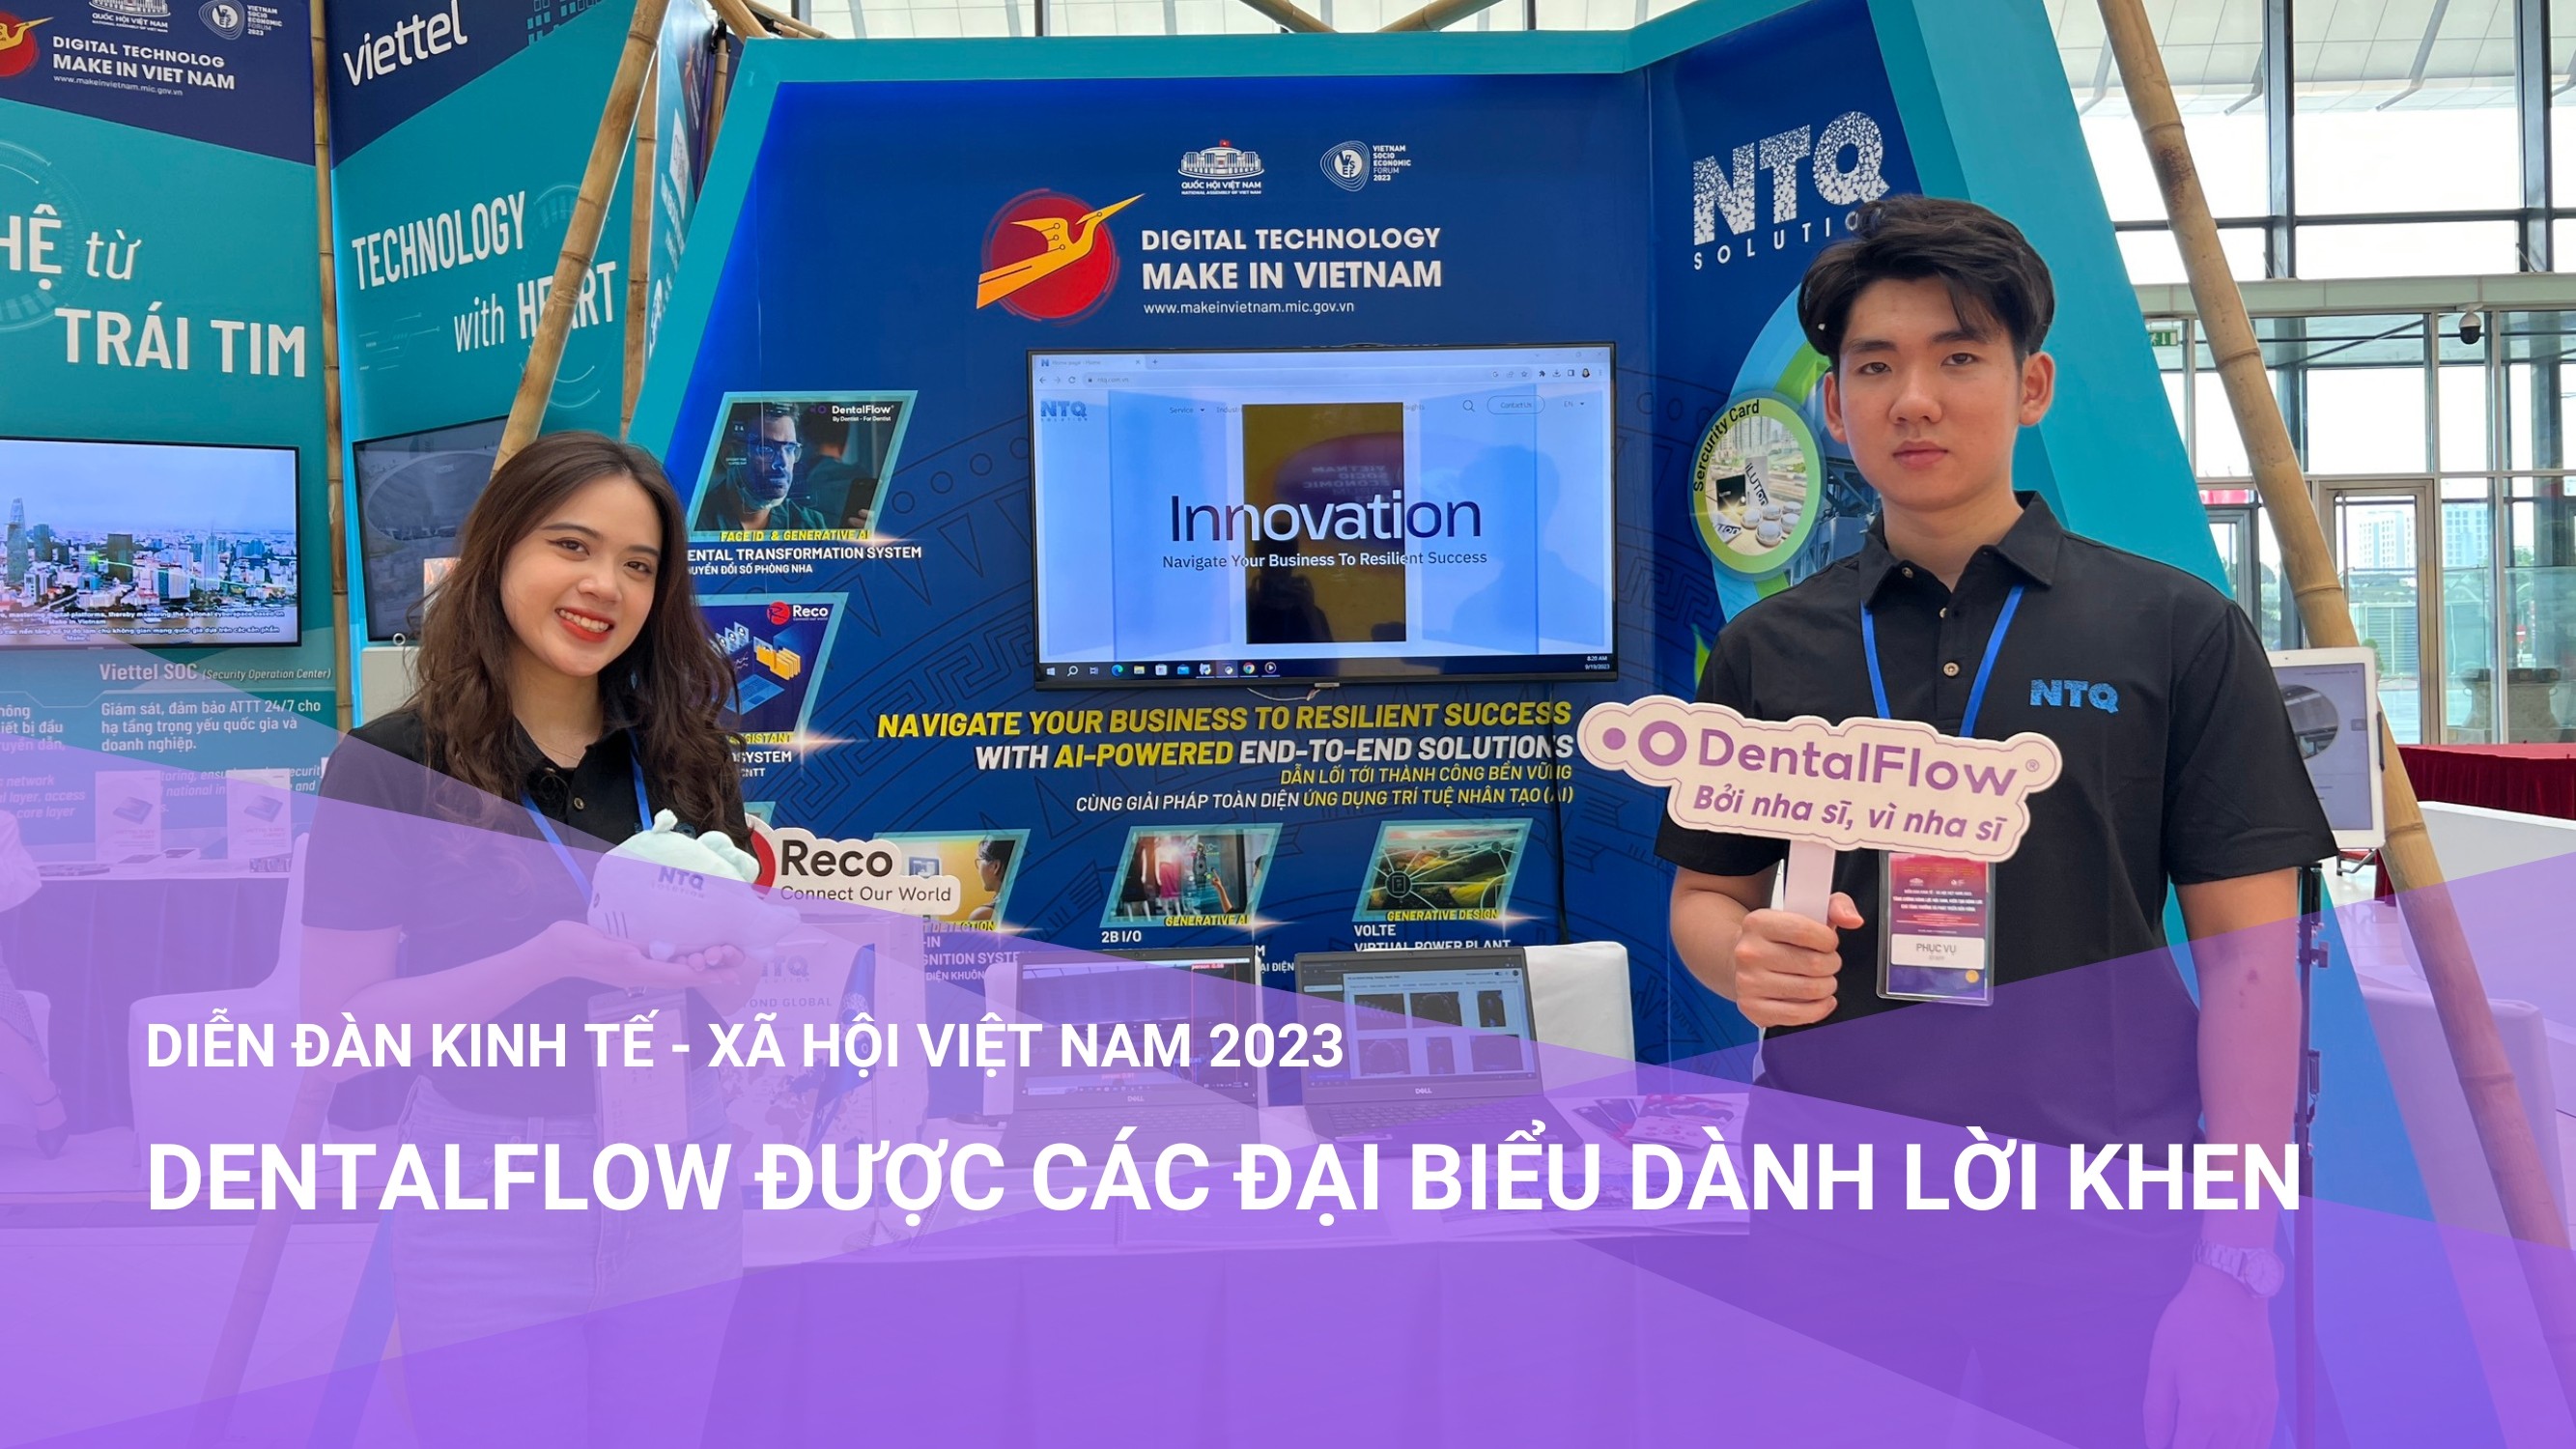 DentalFlow được các đại biểu dành lời khen tại Diễn đàn Kinh tế – Xã hội Việt Nam 2023